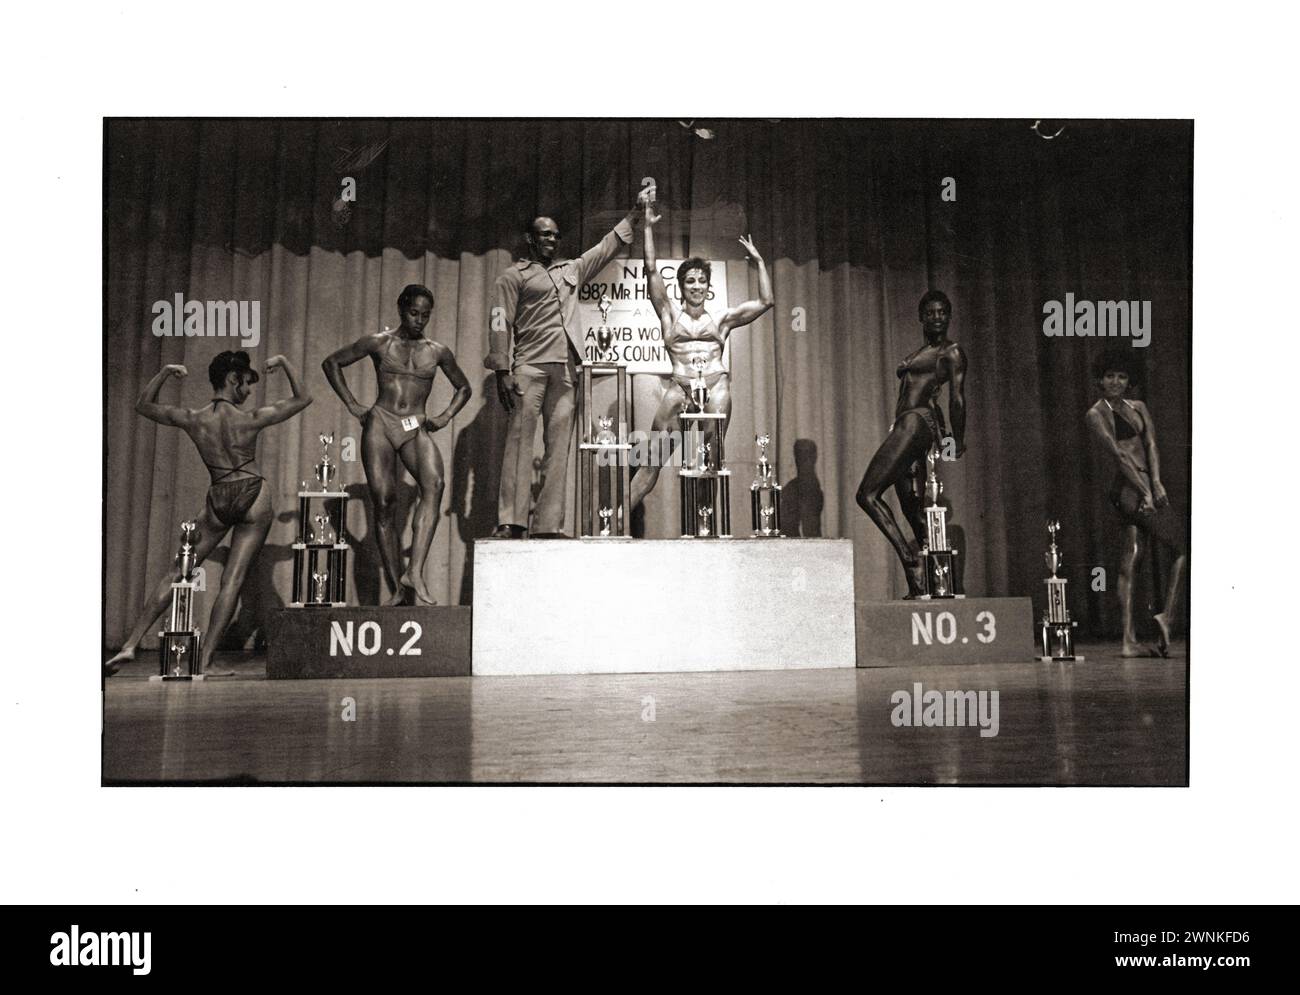 Gewinner und Teilnehmer der Women's Kings County Open Body Division Championship. 1982 in Brooklyn, New York. Bei der Verleihung der Trophäe. Stockfoto